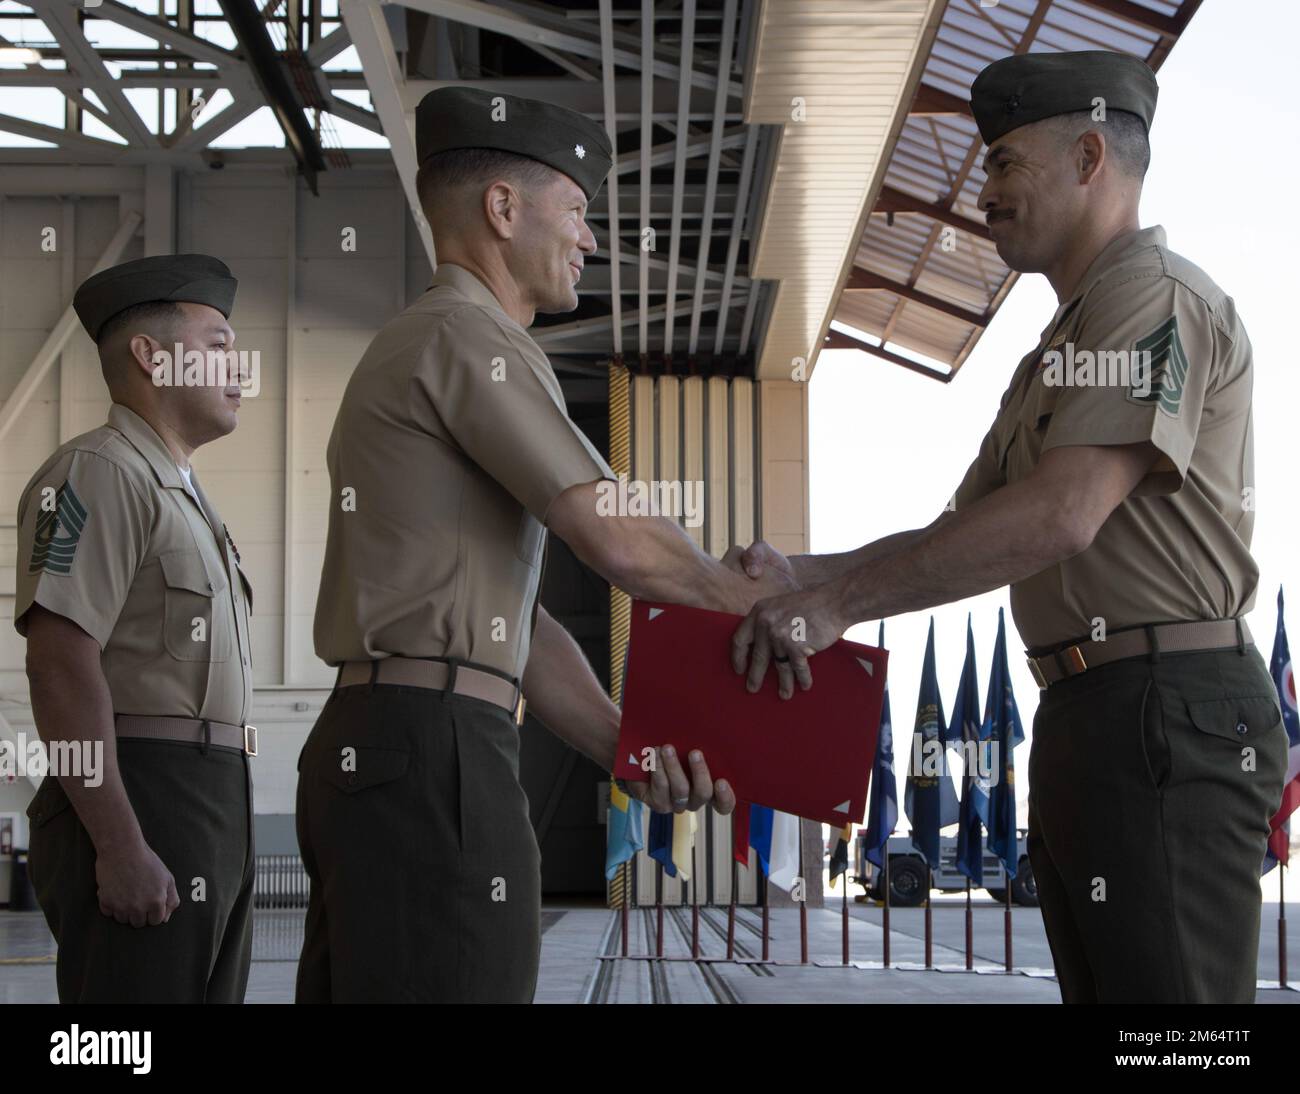 EE.UU El sargento de artillería del Cuerpo de Infantería de Marina Julian Cubillos, jefe de control de calidad del Escuadrón de Pruebas y Evaluación Operacional de Infantería de Marina 1 (VMX-1), recibe un premio durante su ceremonia de retiro en la Estación Aérea del Cuerpo de Infantería de Marina de Yuma, Arizona, el 1 de abril de 2022. Cubillos se retiró después de 20 años de servicio en el Cuerpo de Infantería de Marina. Foto de stock